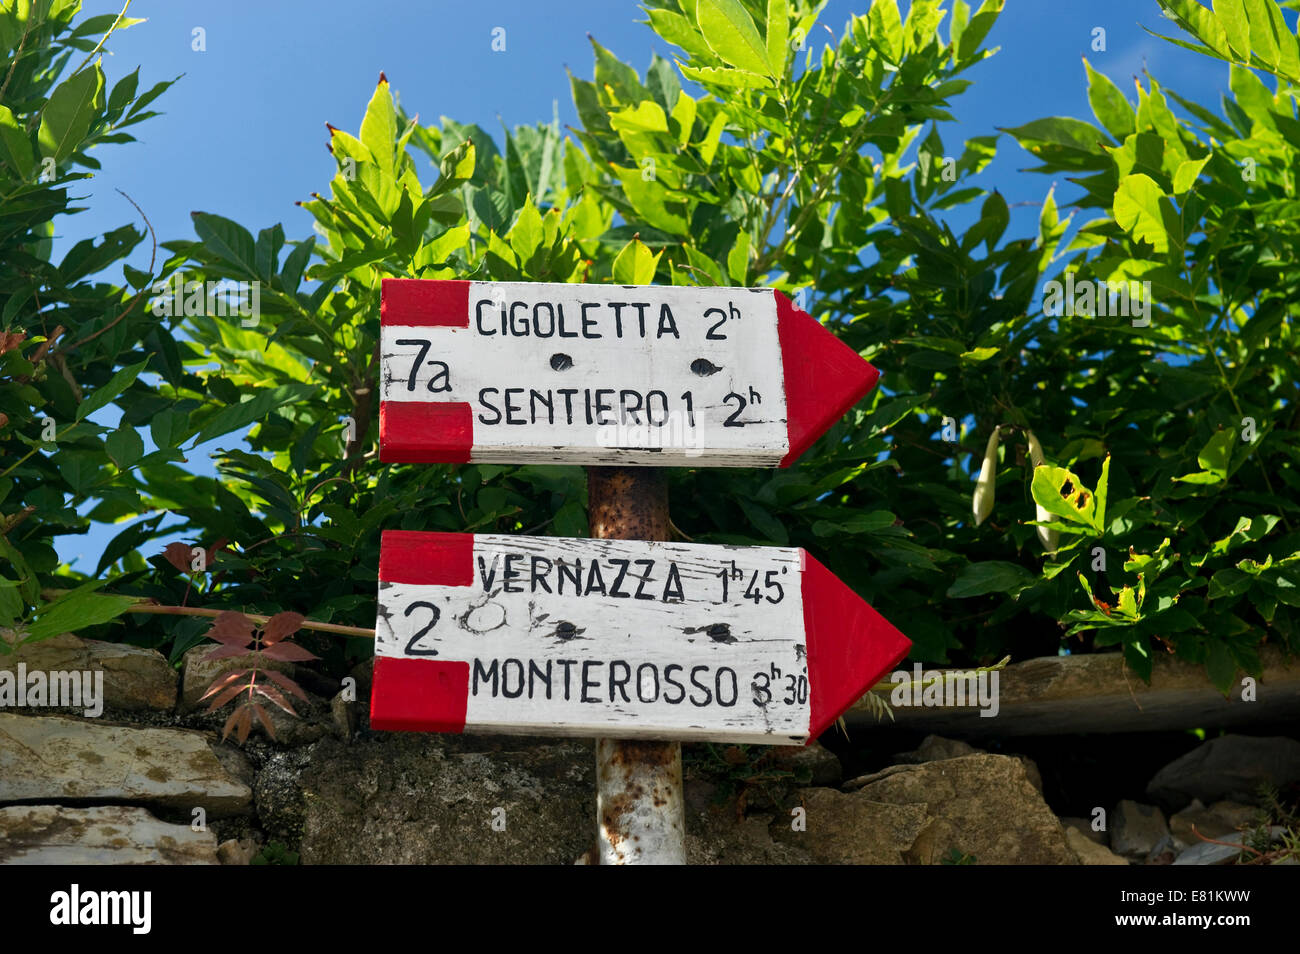 Singpost for hiking trails, Corniglia, Cinque Terre, Liguria, Italy Stock Photo